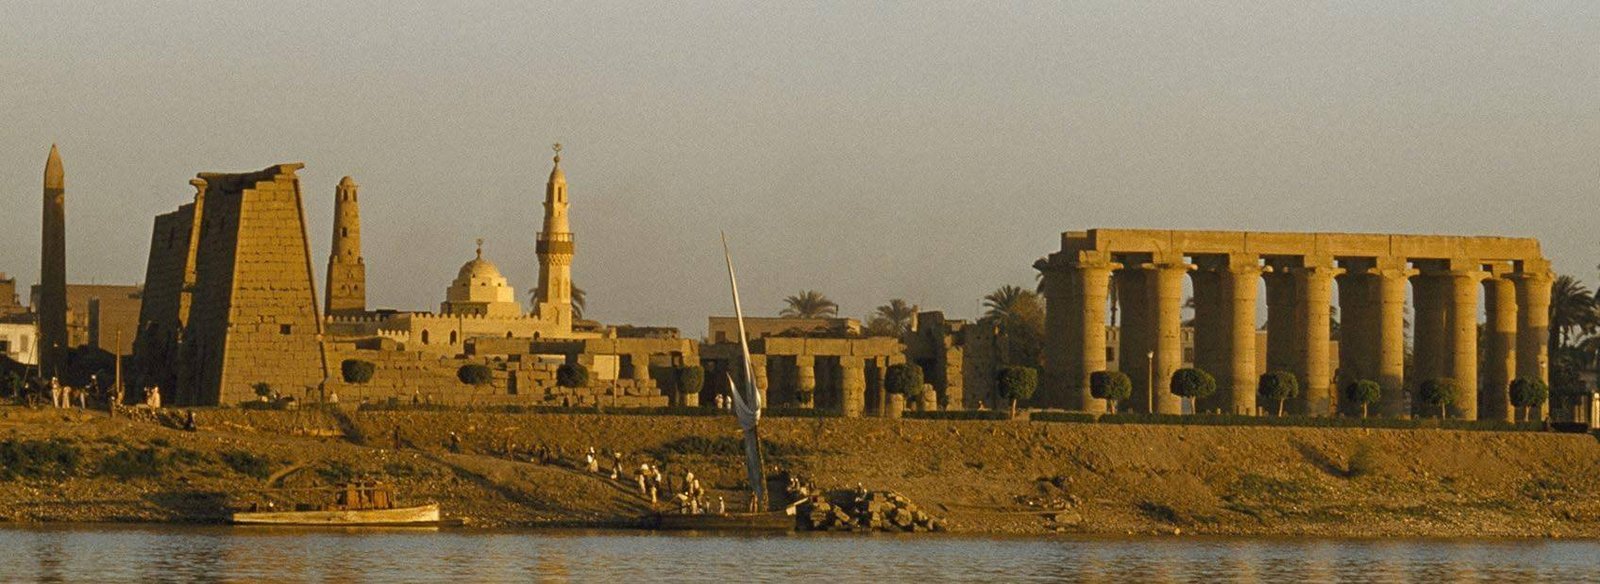 Lugares que visitar en Egipto - Que ver y hacer en Egipto